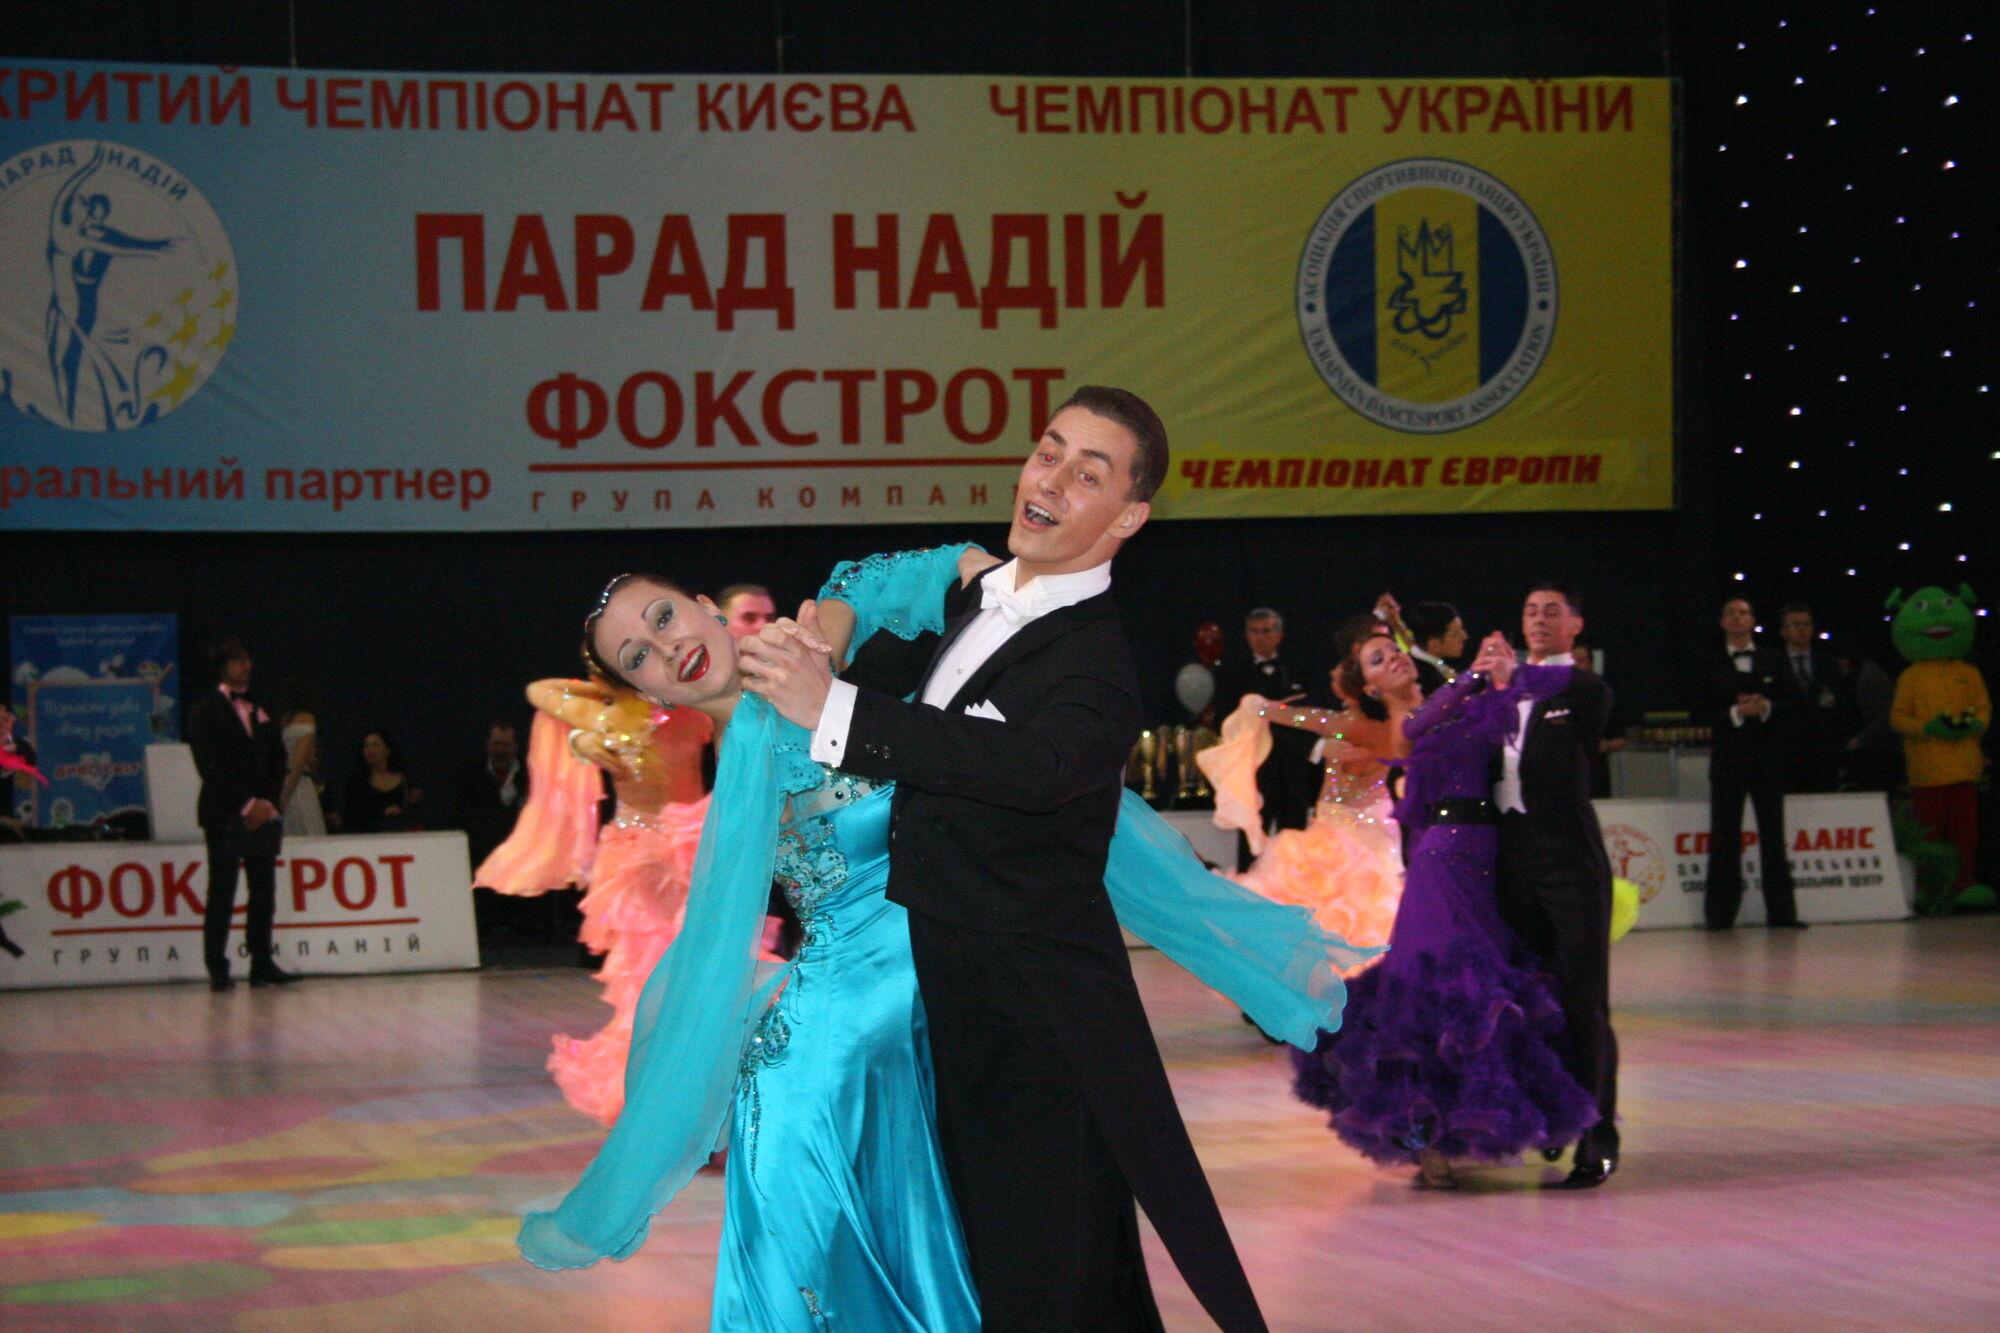 Все на бал: В Киеве состоится фестиваль по спортивно-бальным танцам     